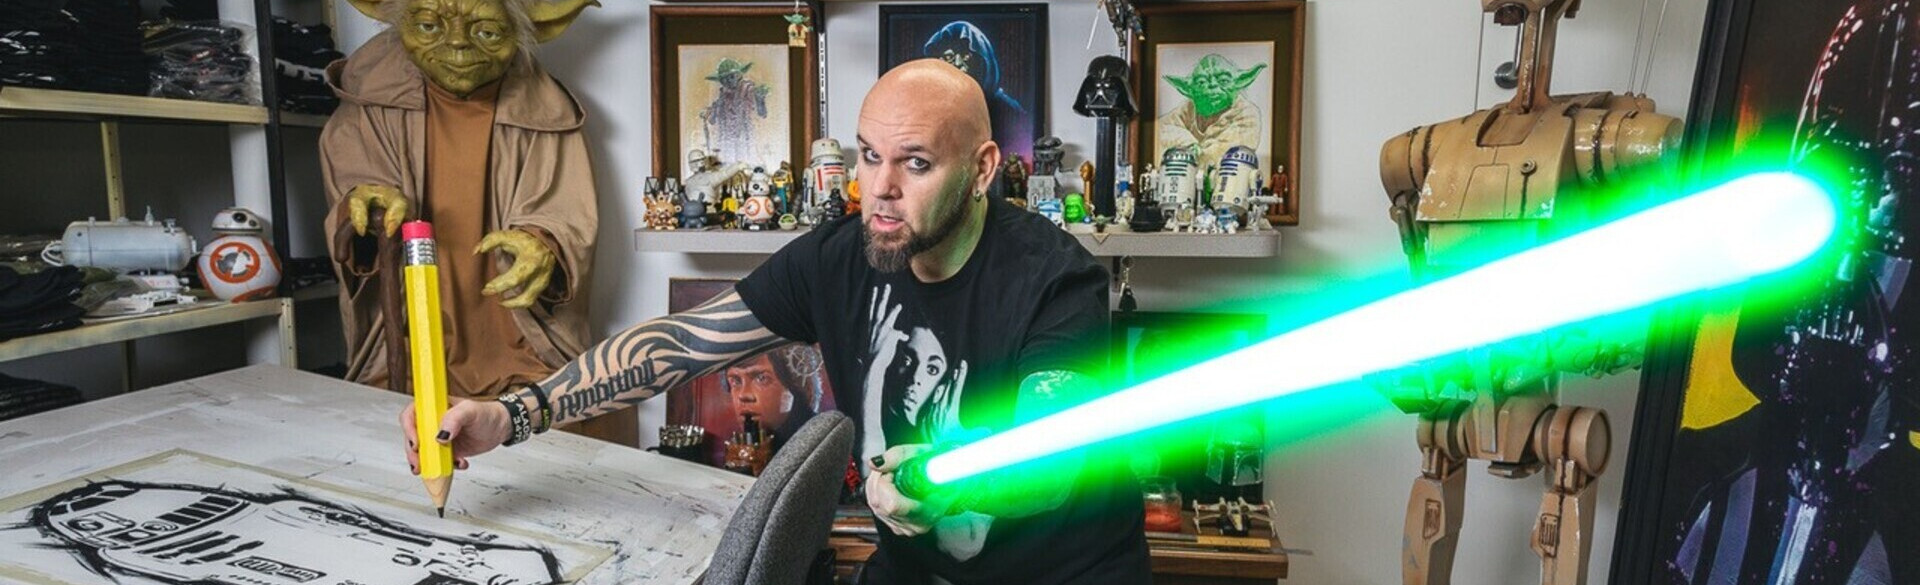 Matt Busch mit Lichtschwert am Zeichnen von Star Wars Figuren